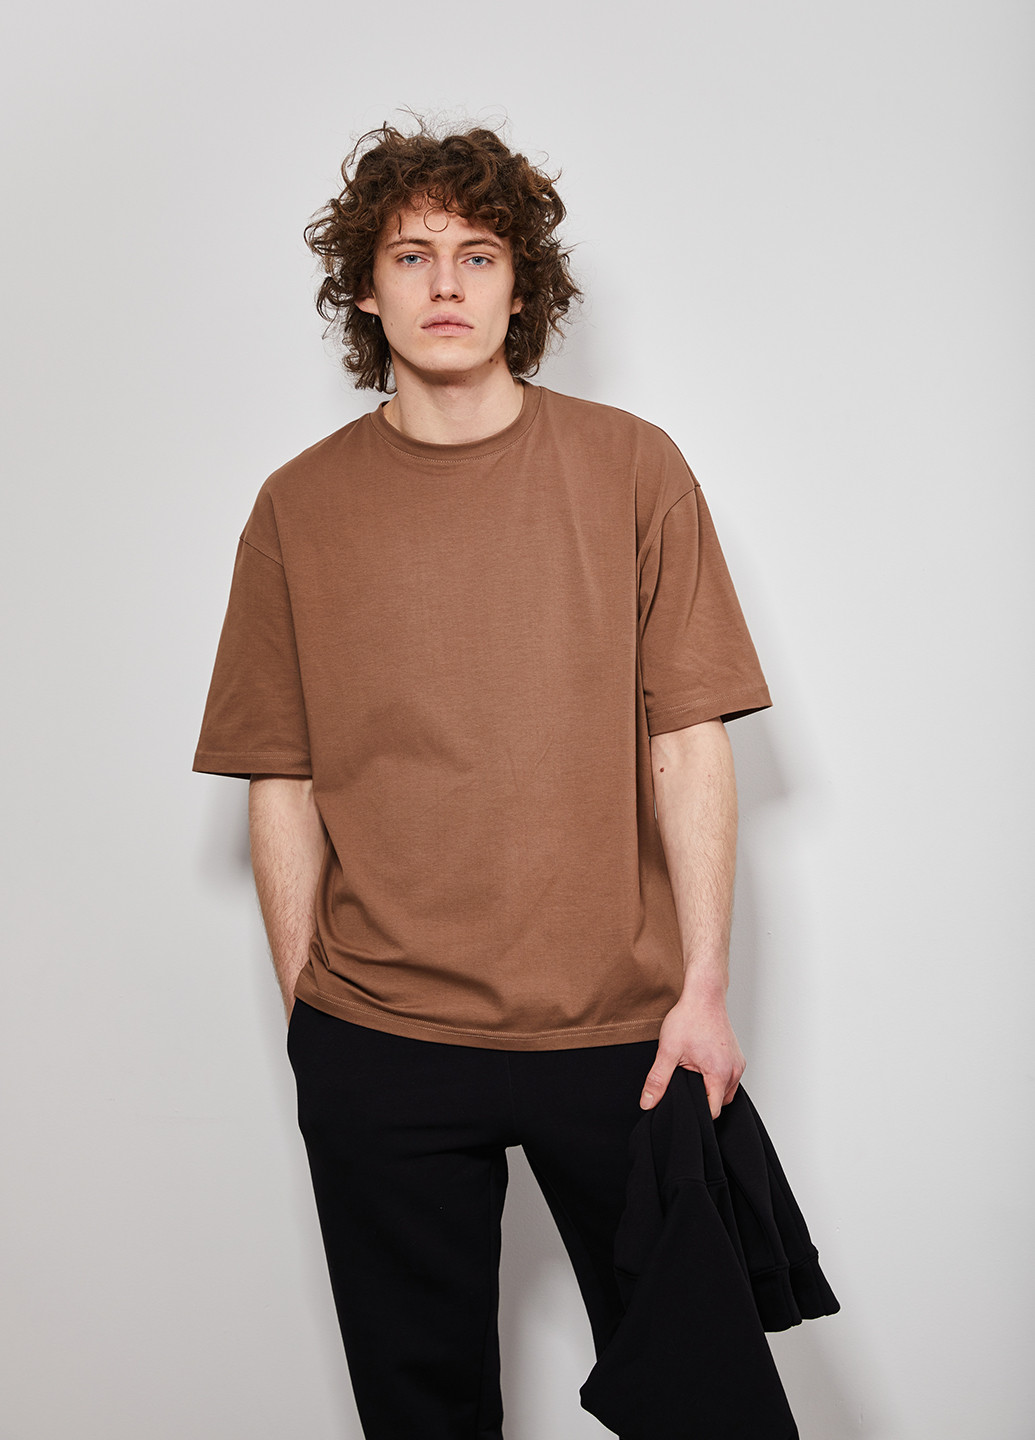 Світло-коричнева футболка оверсайз для чоловіків KASTA design